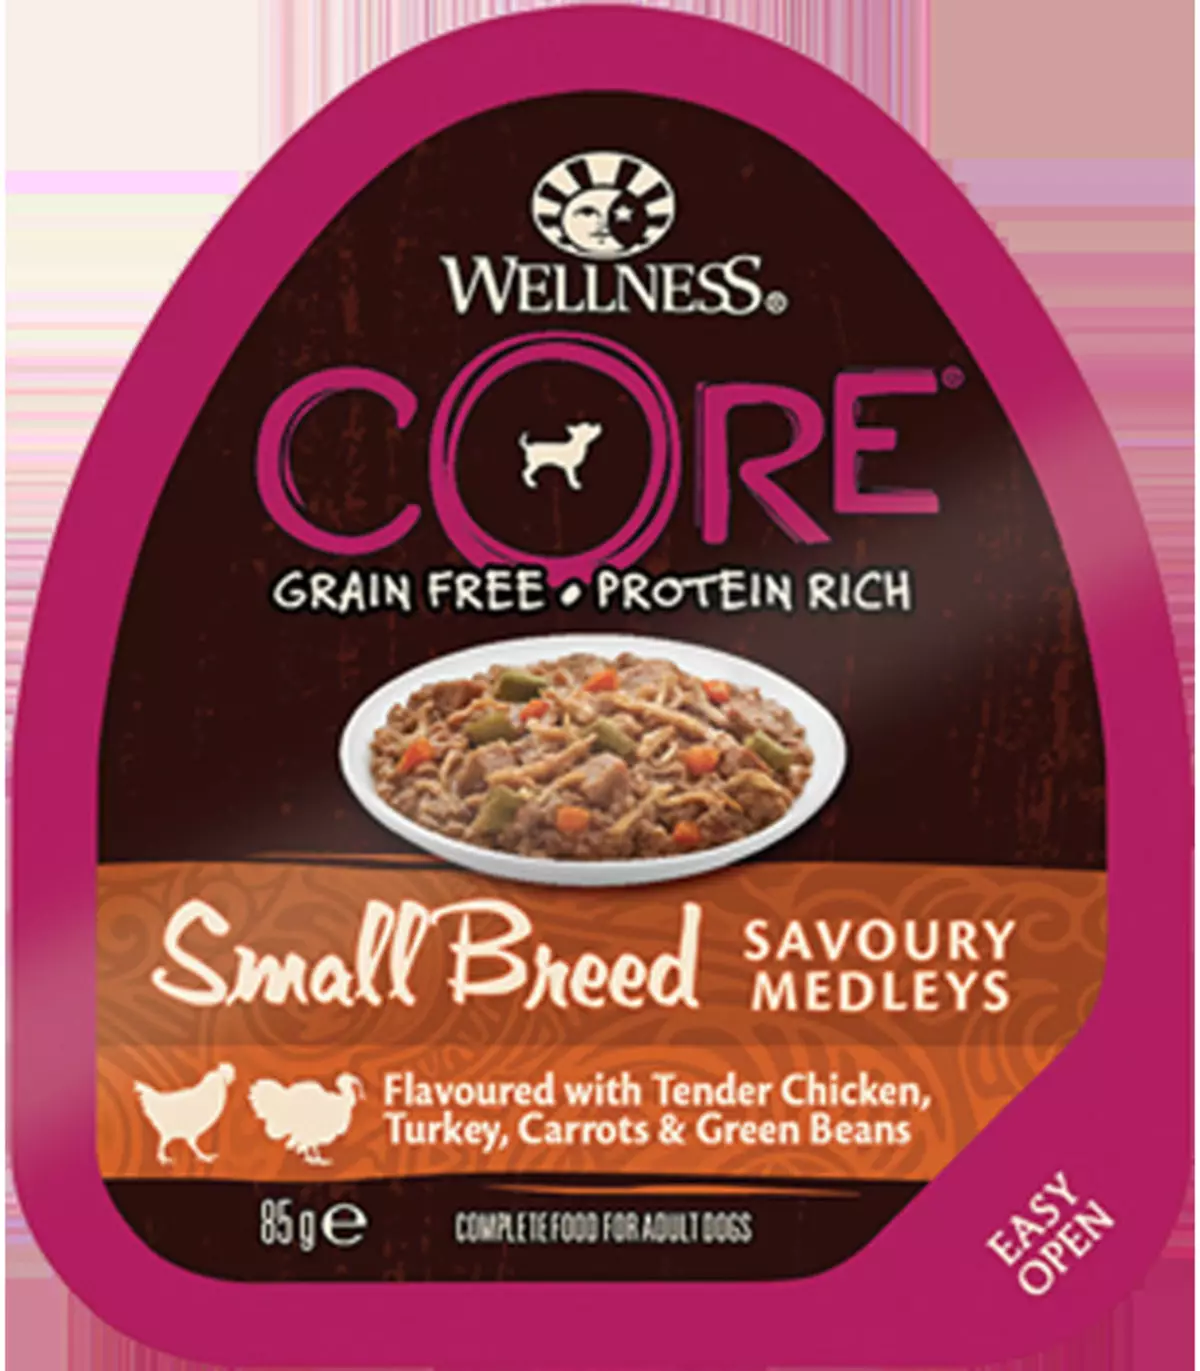 Core Wellness kanggo asu: komposisi, panganan kanggo anak anjing lan watu cilik, garing lan udan nganggo lamb, spesies liyane 22132_22